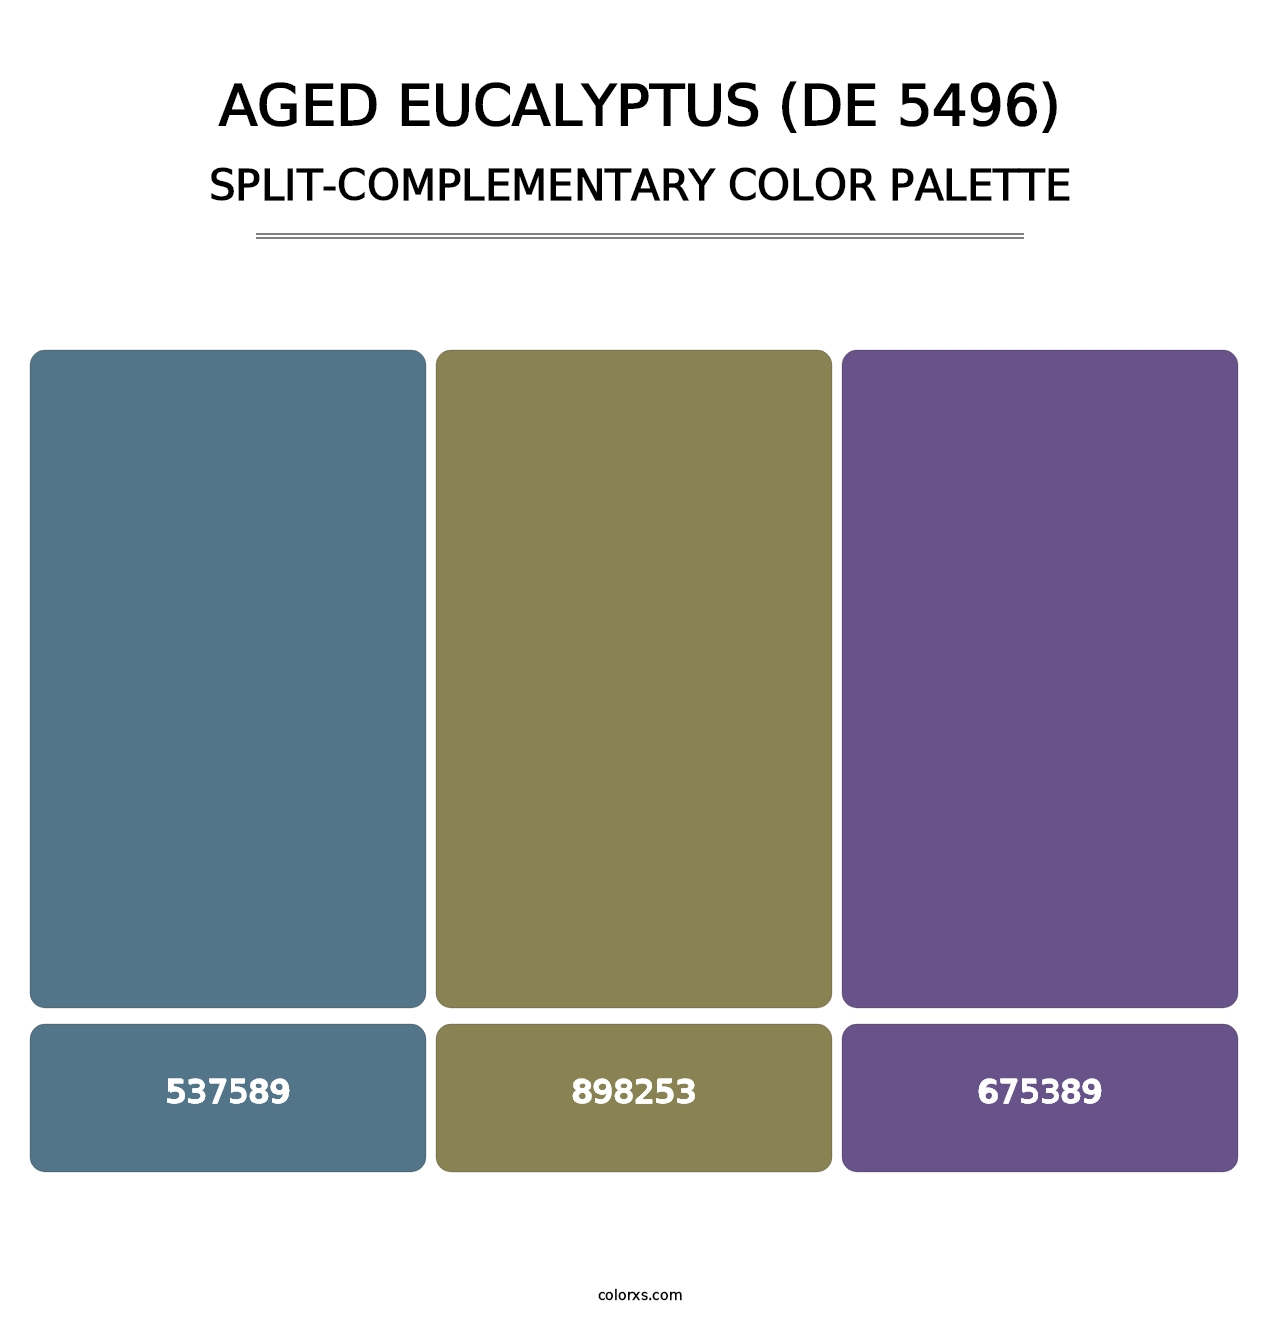 Aged Eucalyptus (DE 5496) - Split-Complementary Color Palette